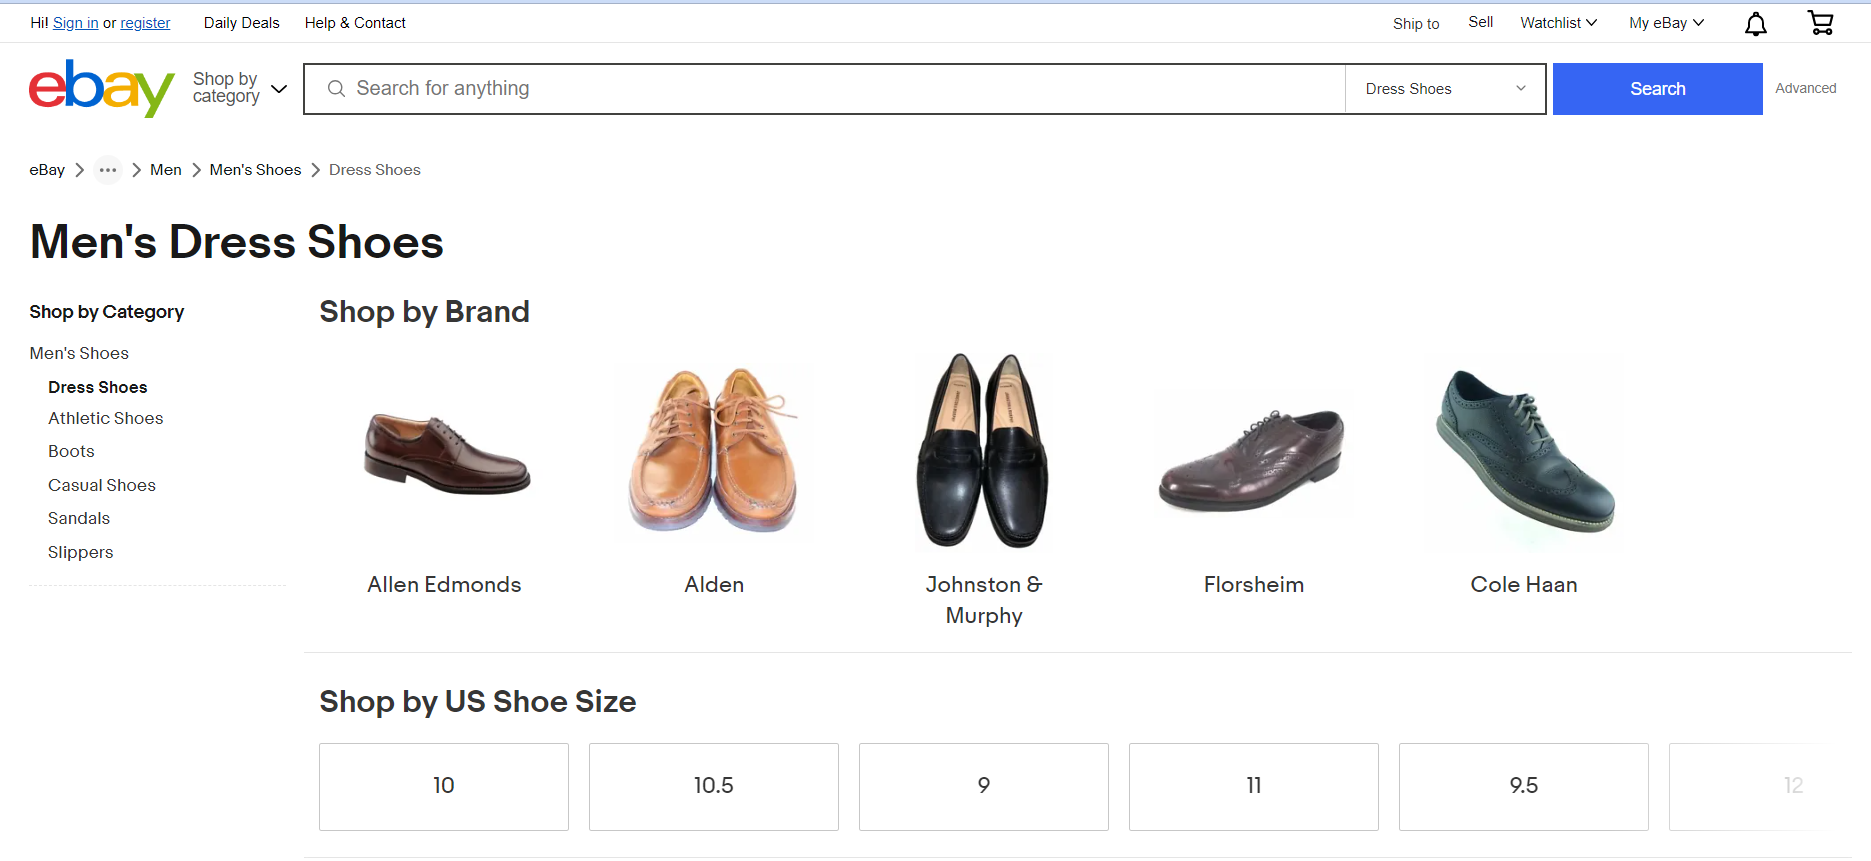 Shoe catalog on Ebay